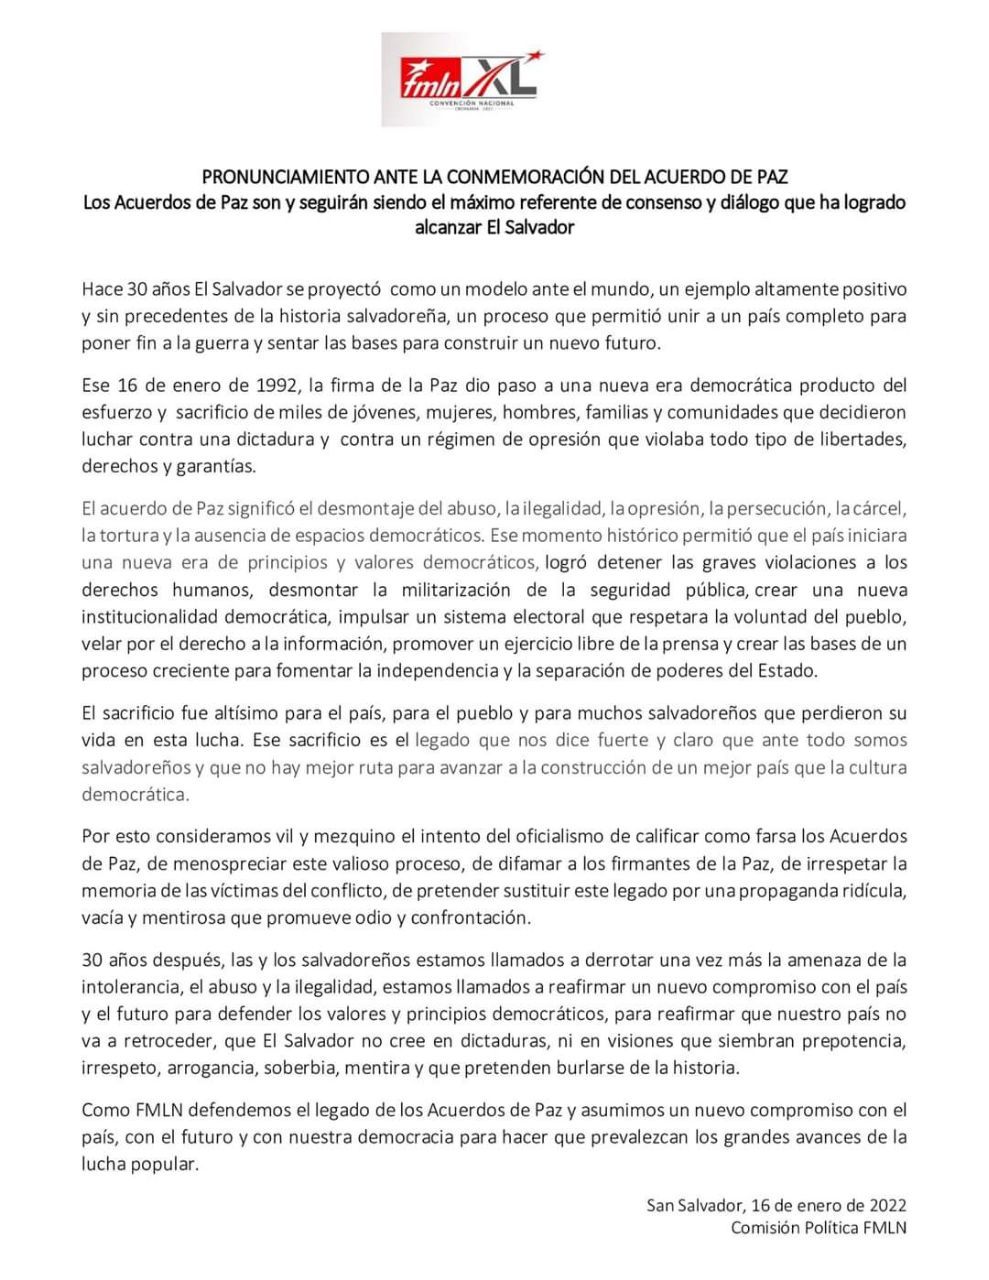 FMLN conmemora los Acuerdos de Paz y marcha con el pueblo en las calles.